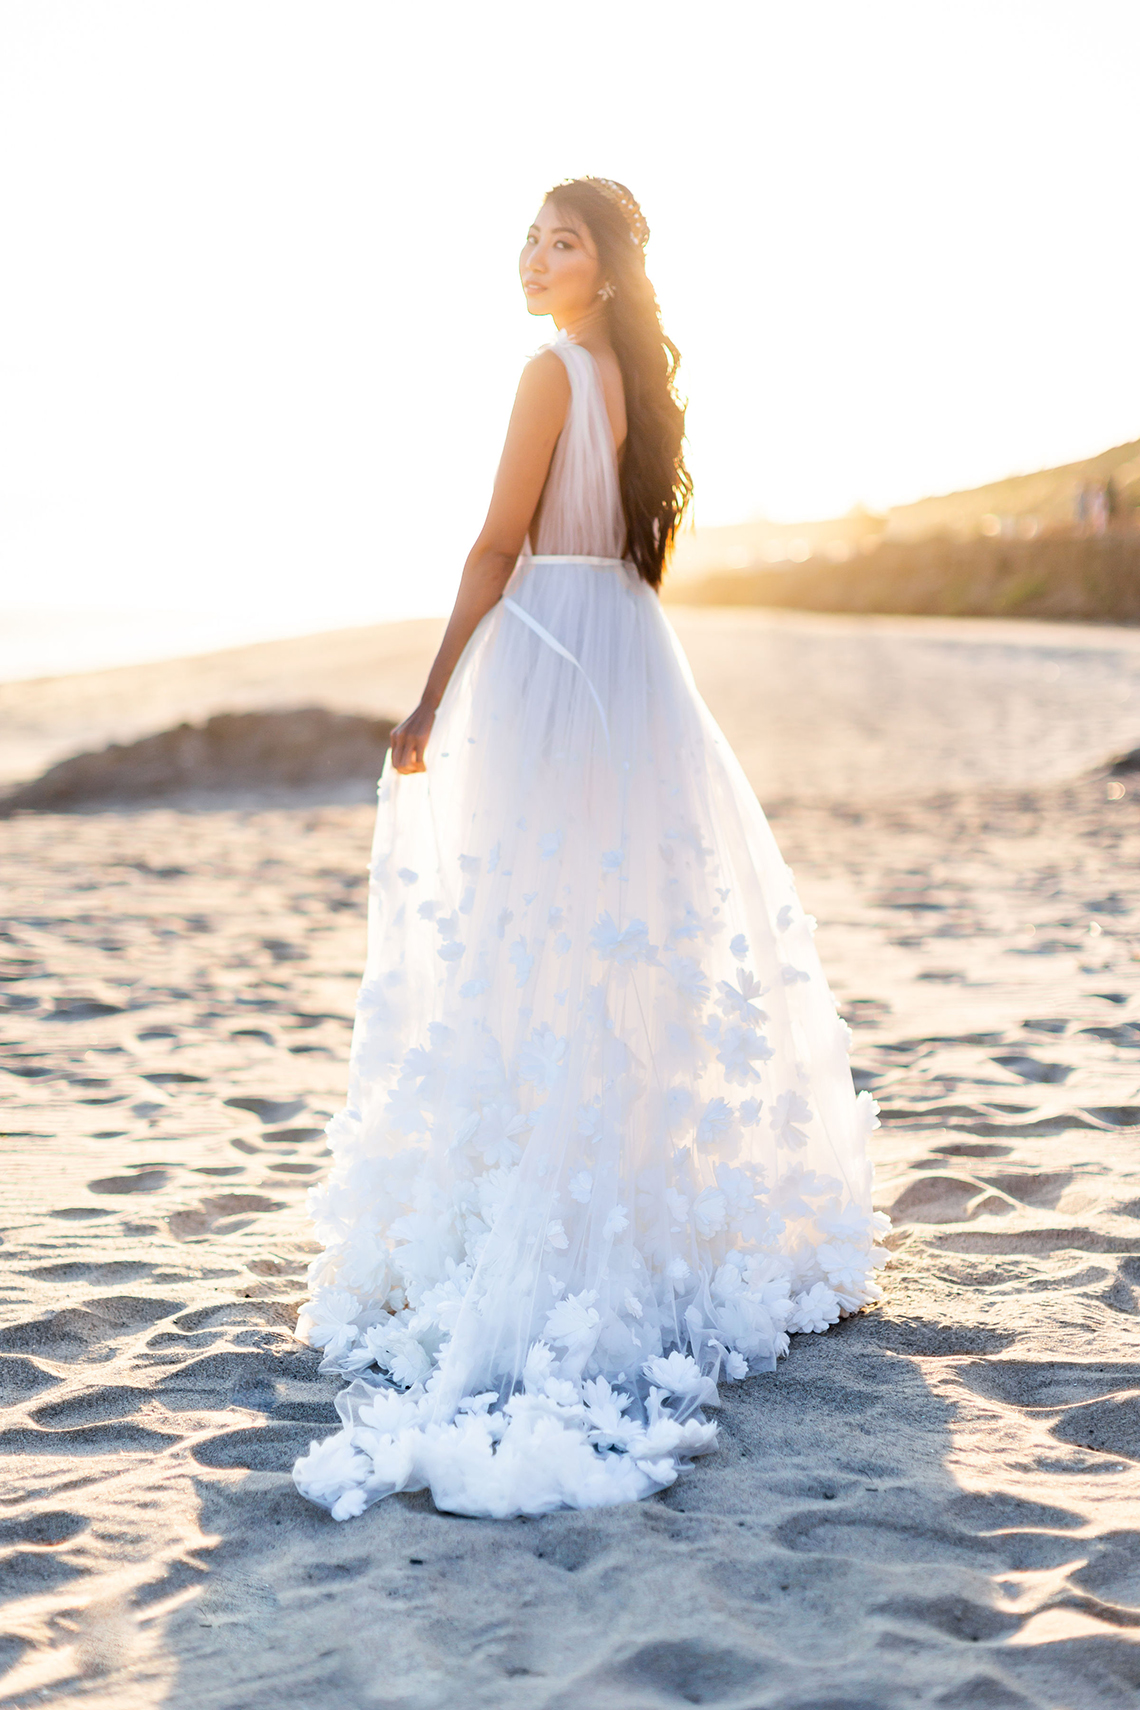 Ethereal Malibu Beach Wedding Inspiration Courage and Dash Photo 2 - Cách thực hiện và các nền tảng tốt nhất